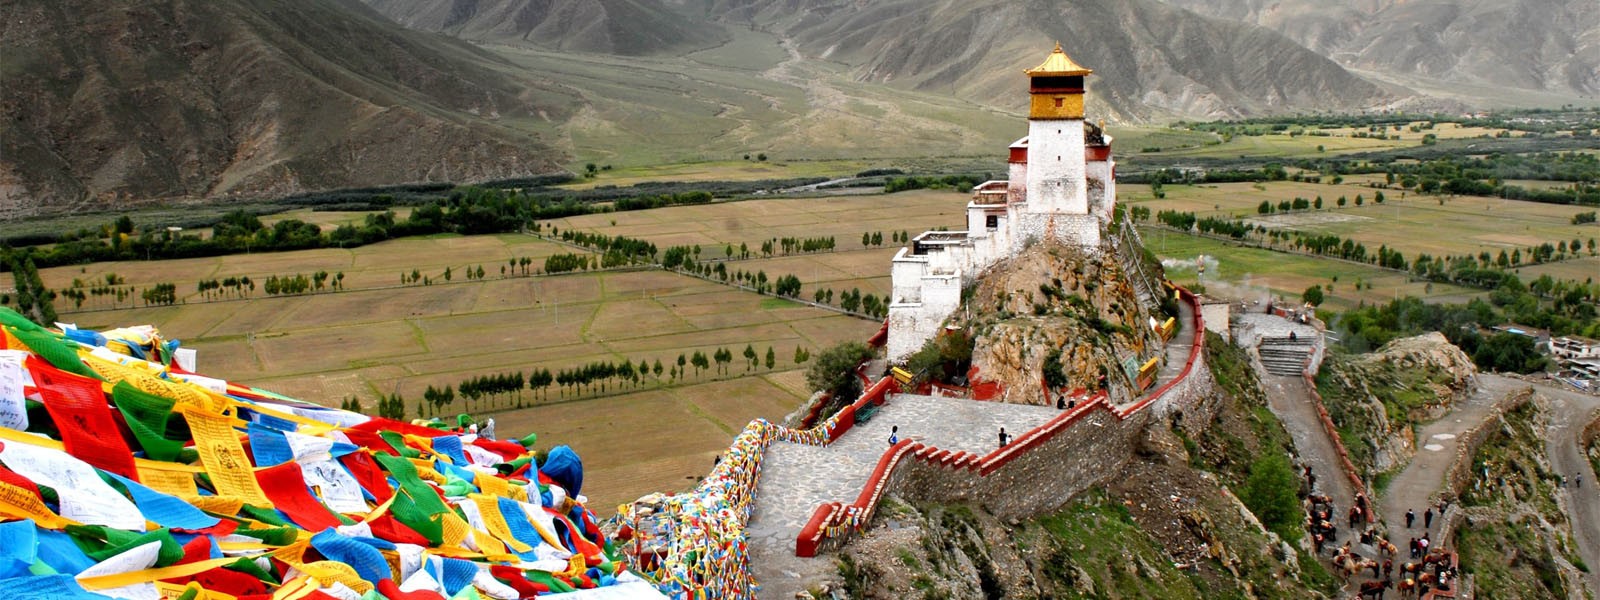 Lhasa and Kathmandu Overland Tours